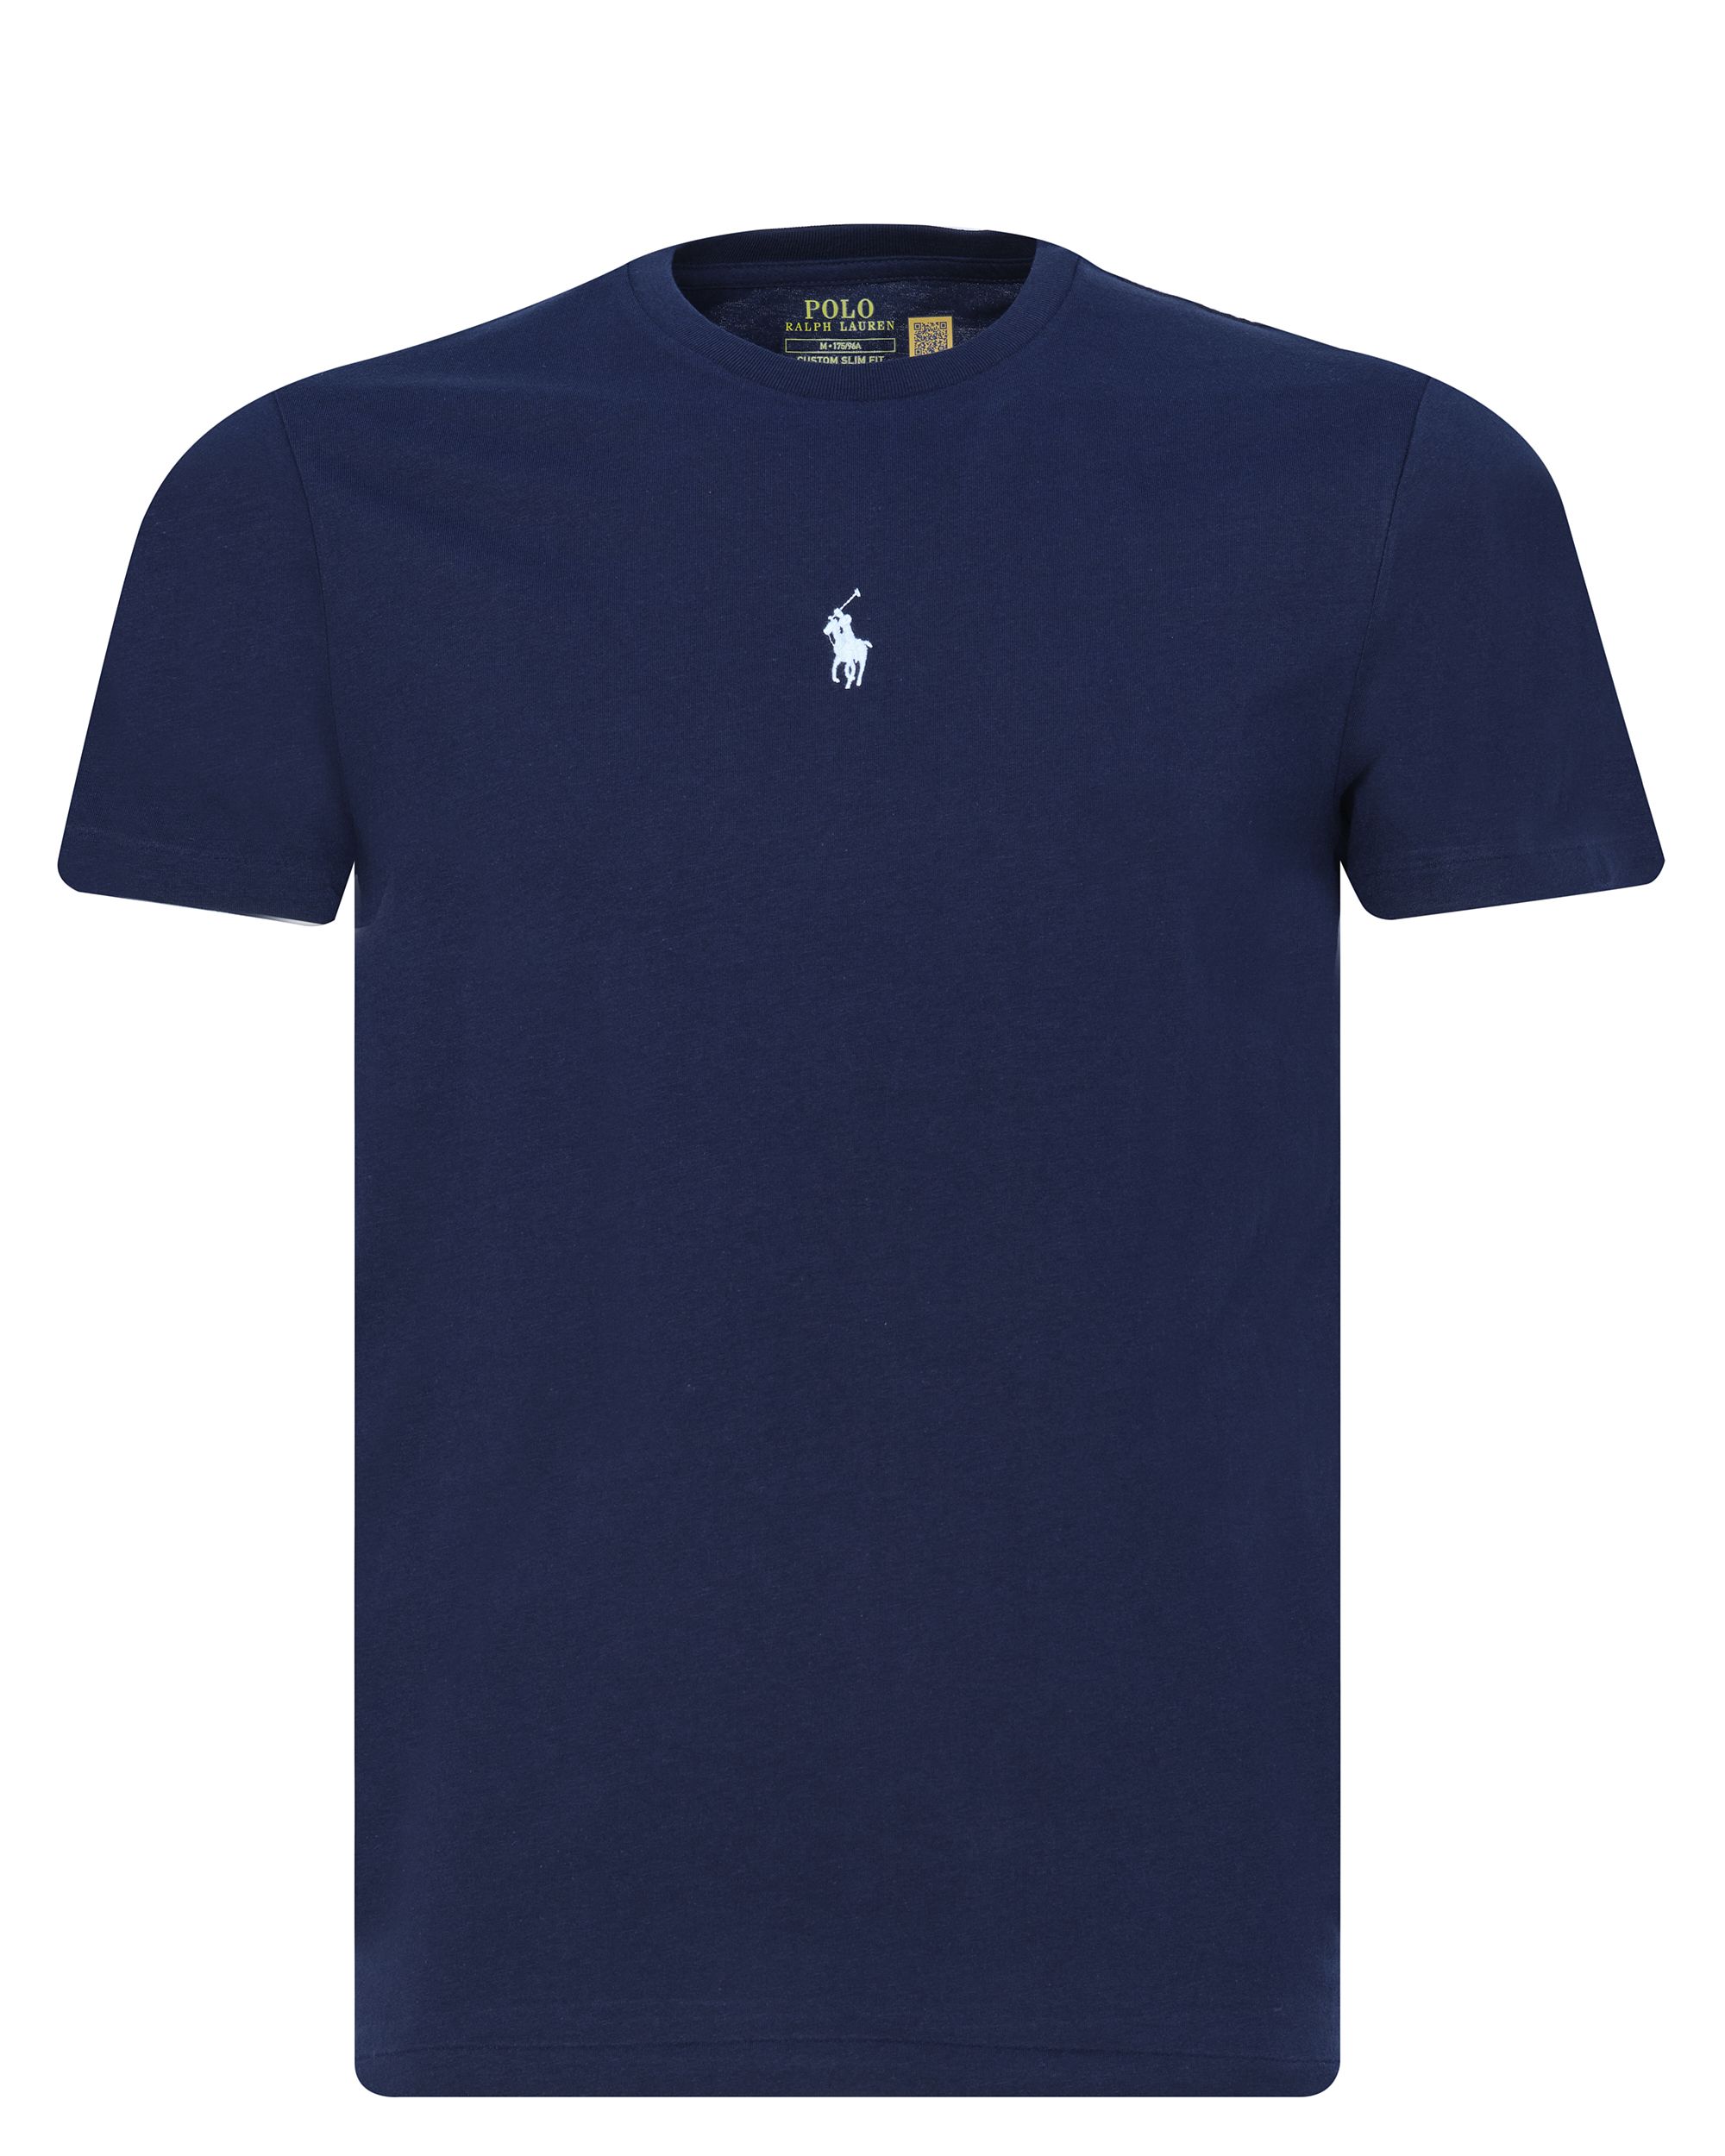 Polo Ralph Lauren T-shirt KM Donker blauw 080570-001-L